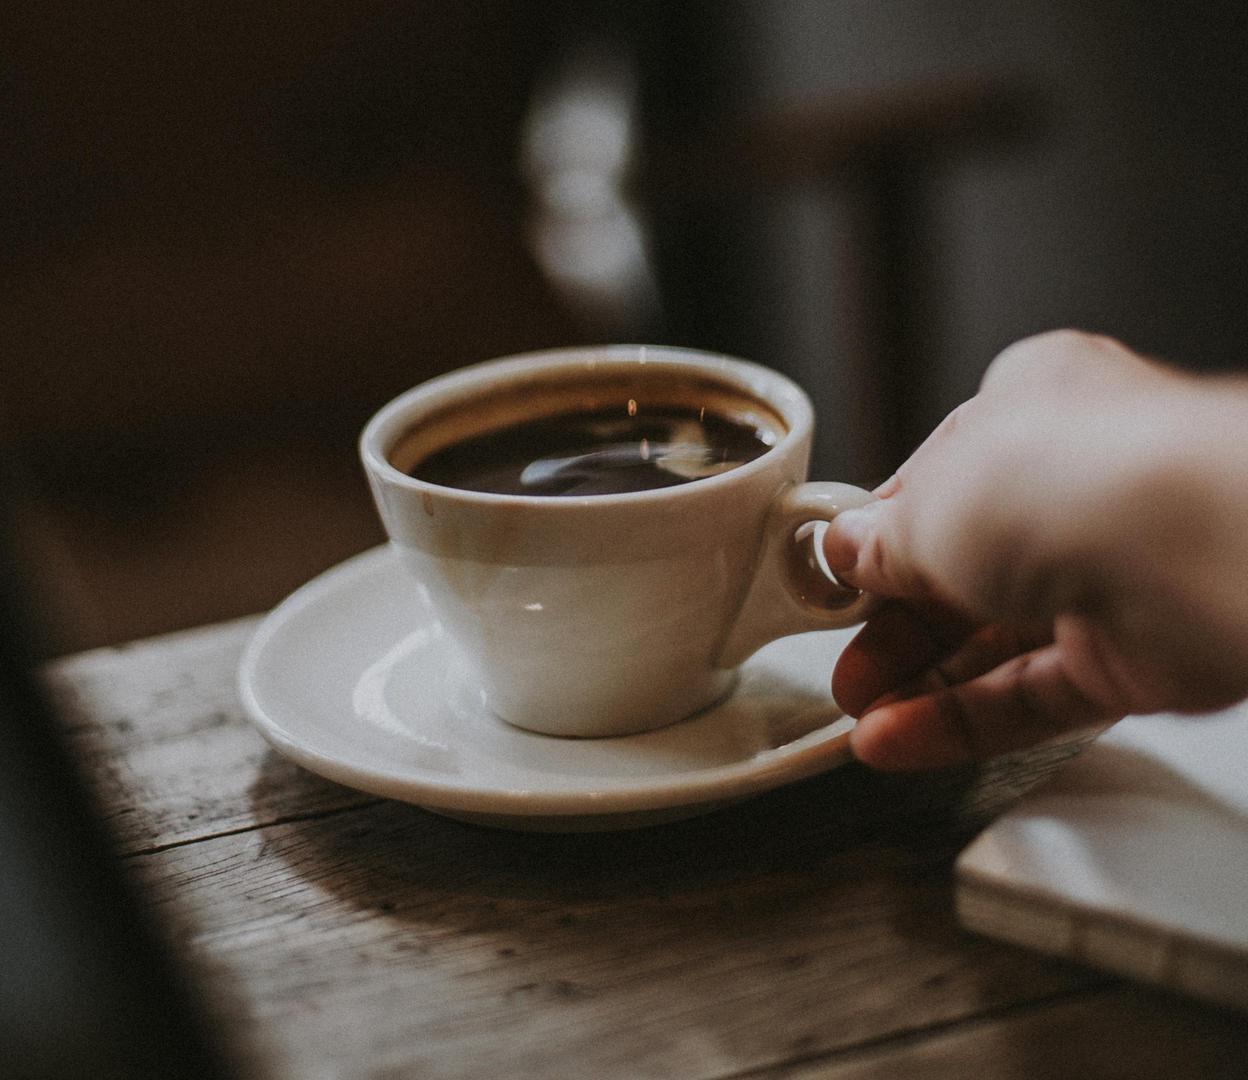 Nije točno niti da kava dehidrira. Iako ćemo uvijek tražiti čašu vode uz kavu, naučeni da kava dehidrira naš organizam, današnja medicina tvrdi da to nije točno. Postoje dokazi da kava može hidratizirati tijelo isto kao i voda, tvrdi Angela Lemond, glasnogovornica američke državne Agencije za nutricionizam i prehranu. 